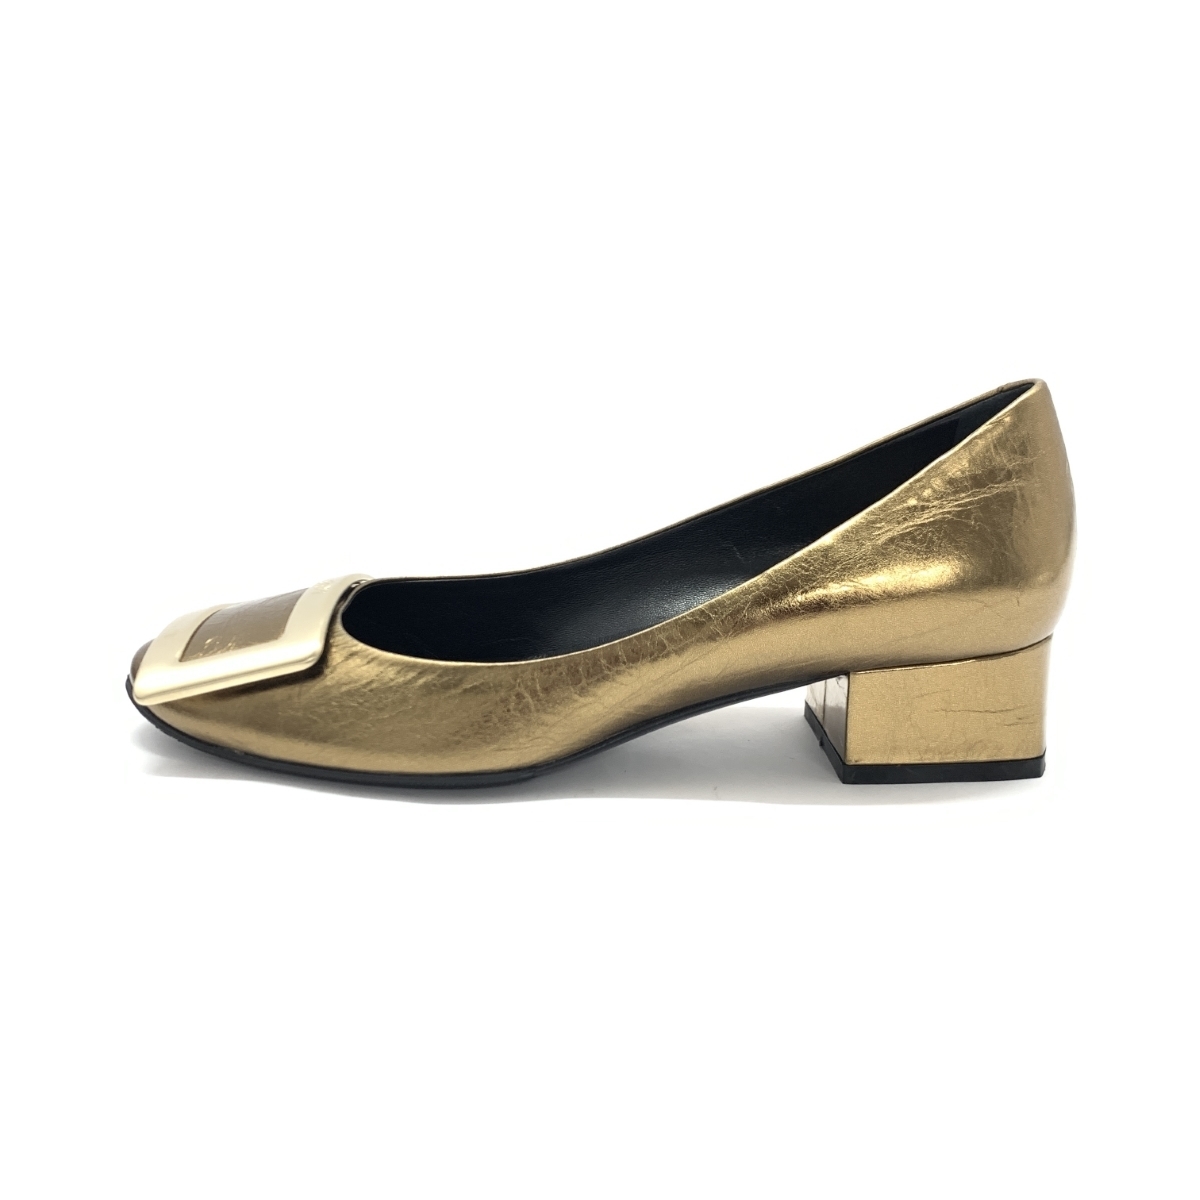  прекрасный товар *Roger Vivierroje vi vi e туфли-лодочки 35* Gold цвет кожа квадратное plate женский обувь обувь shoes